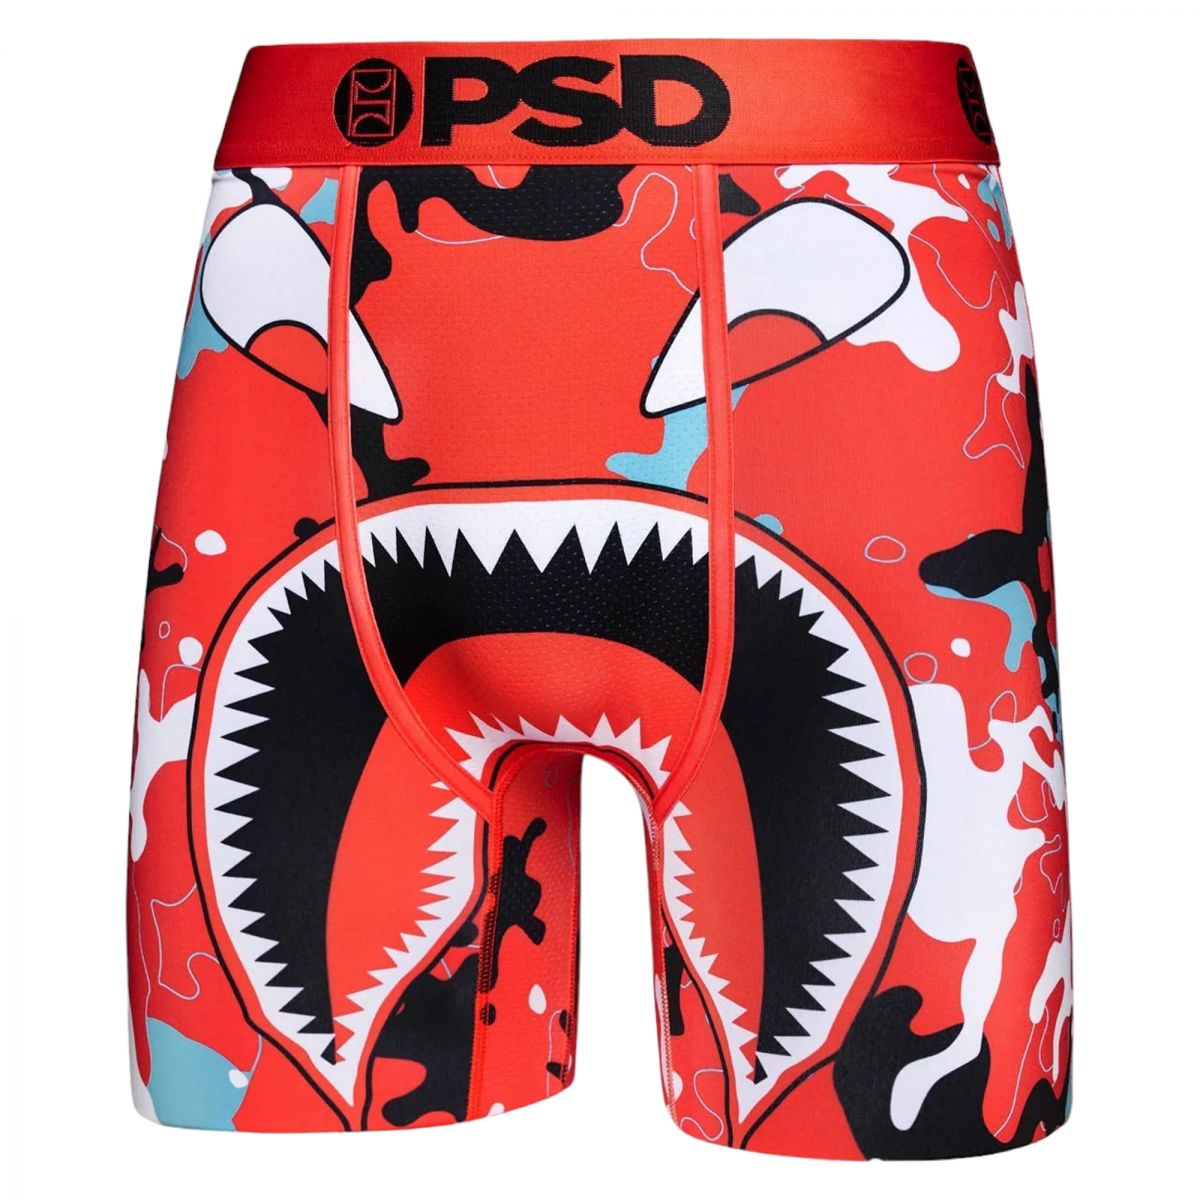 PSD Underwear Youth's Stretch Elastic Band Boxer Brief Underwear 2-Pack